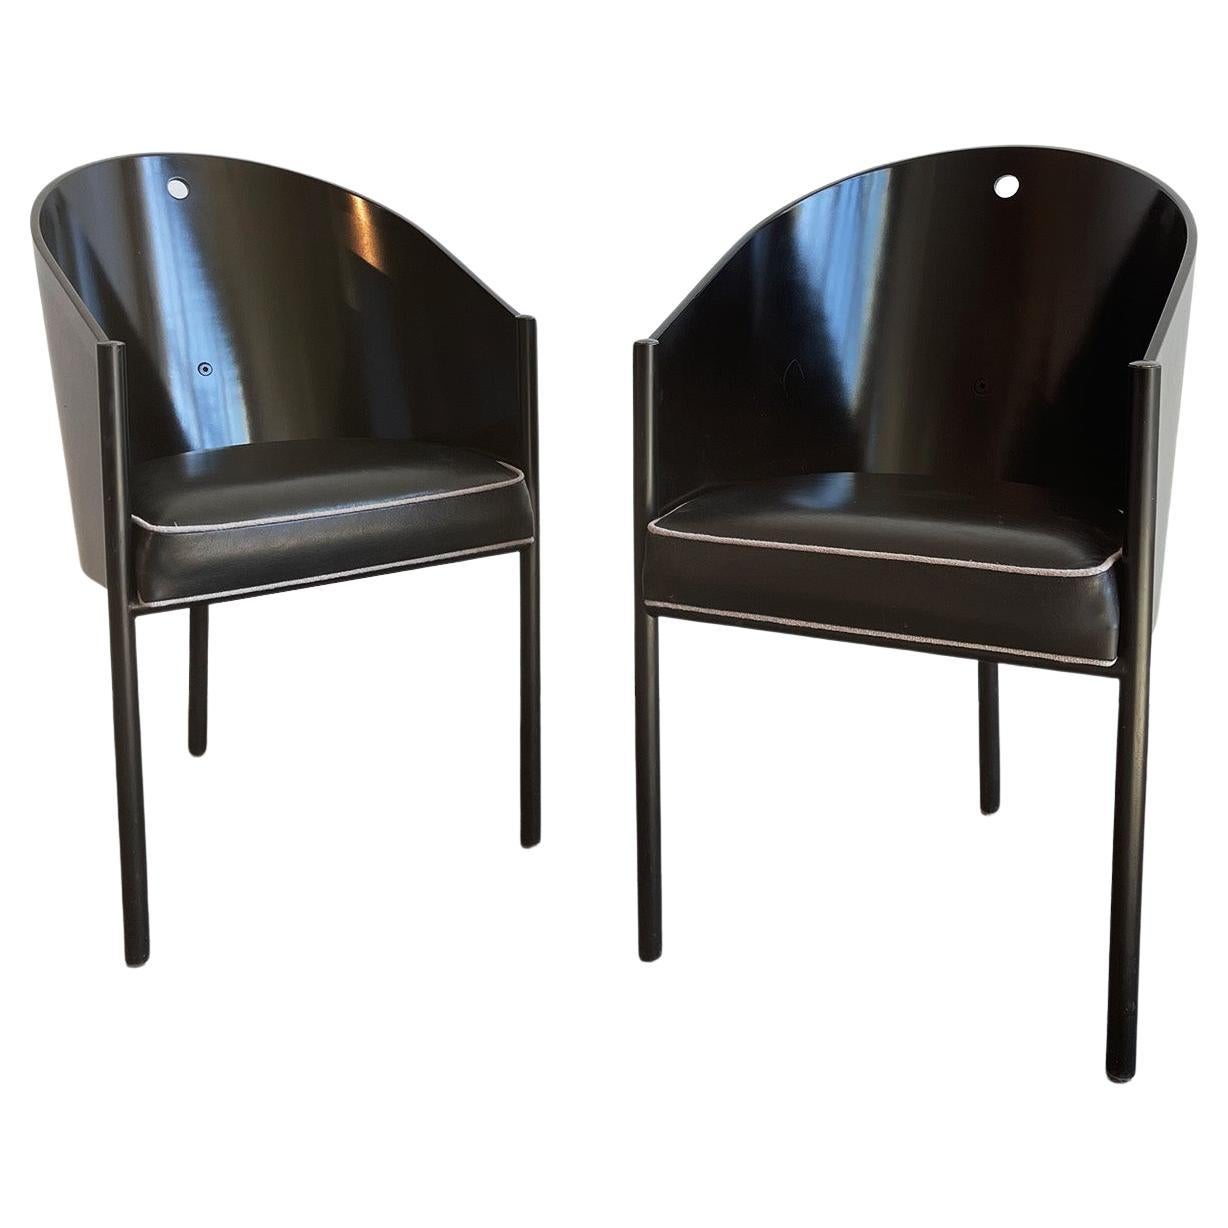 Paire de chaises Costes noires de Philippe Starck